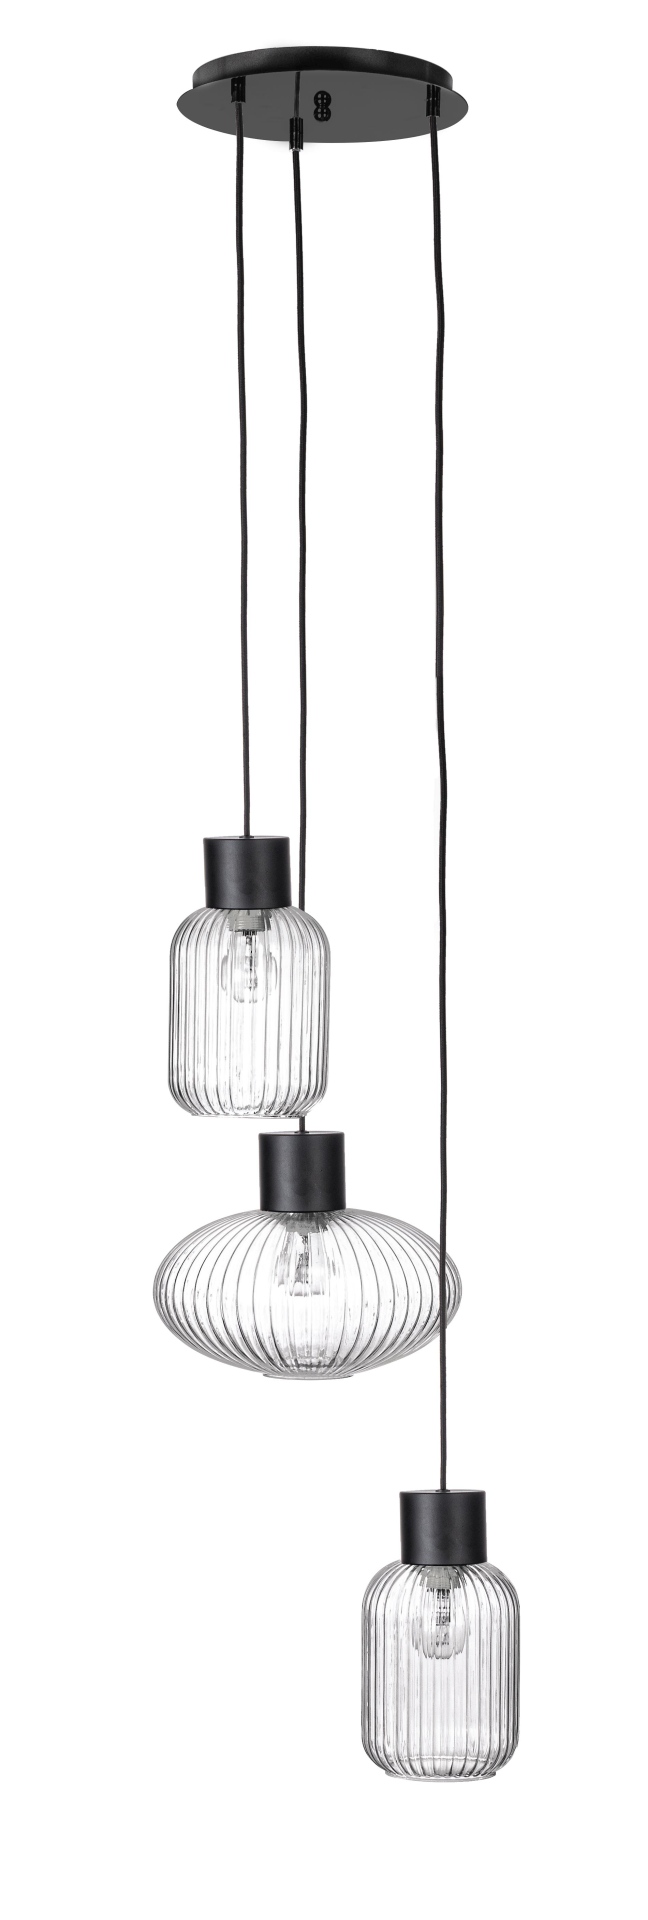 Die Hängeleuchte Showy überzeugt mit ihrem modernen Design. Gefertigt wurde sie aus Metall, welches einen schwarzen Farbton besitzt. Die Lampenschirme sind aus Glas und sind klar. Die Lampe besitzt eine Höhe von 150 cm.